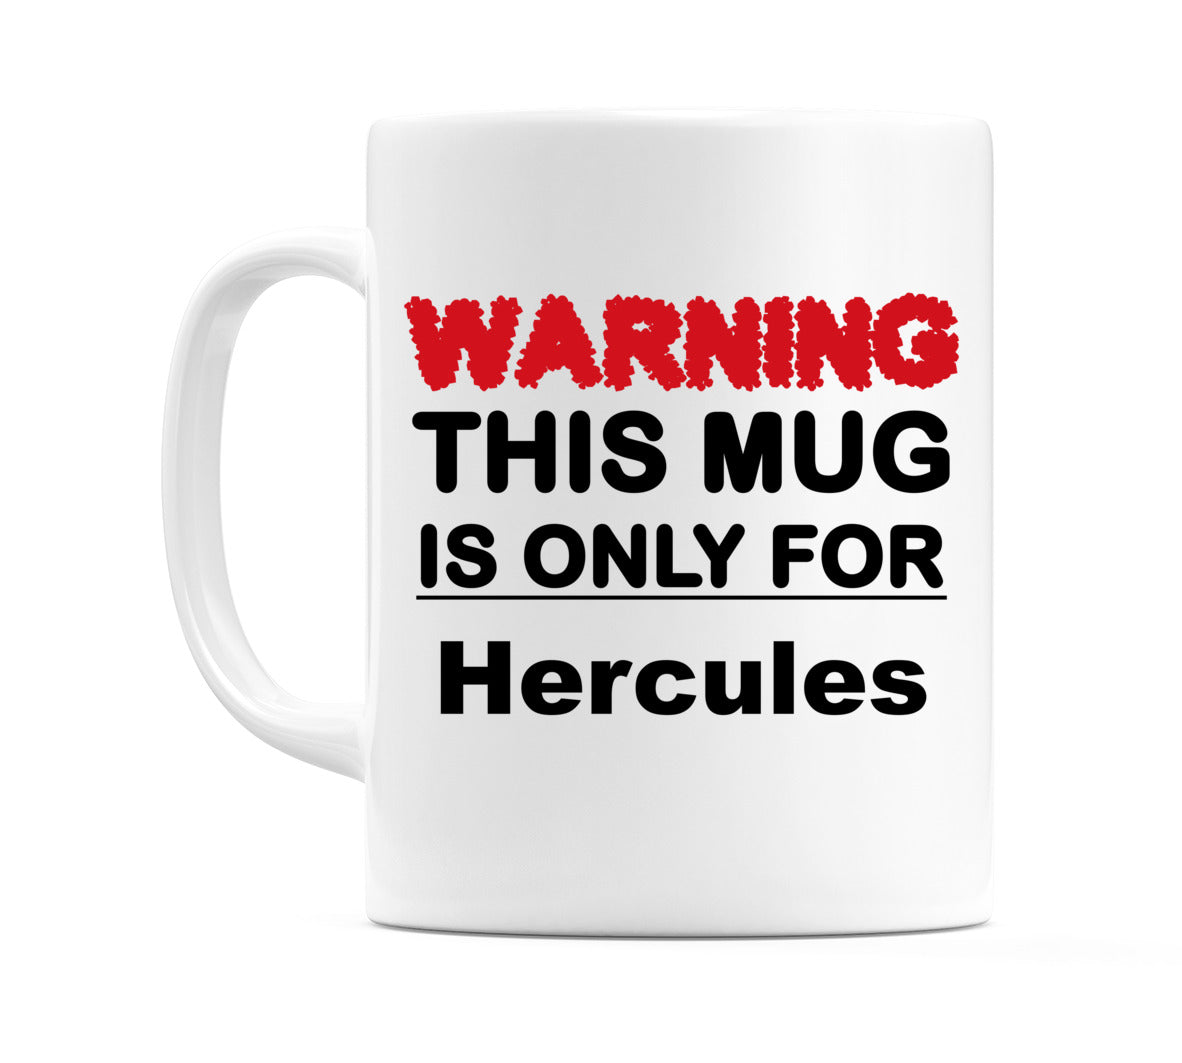 Warning This Mug is ONLY for Hercules Mug